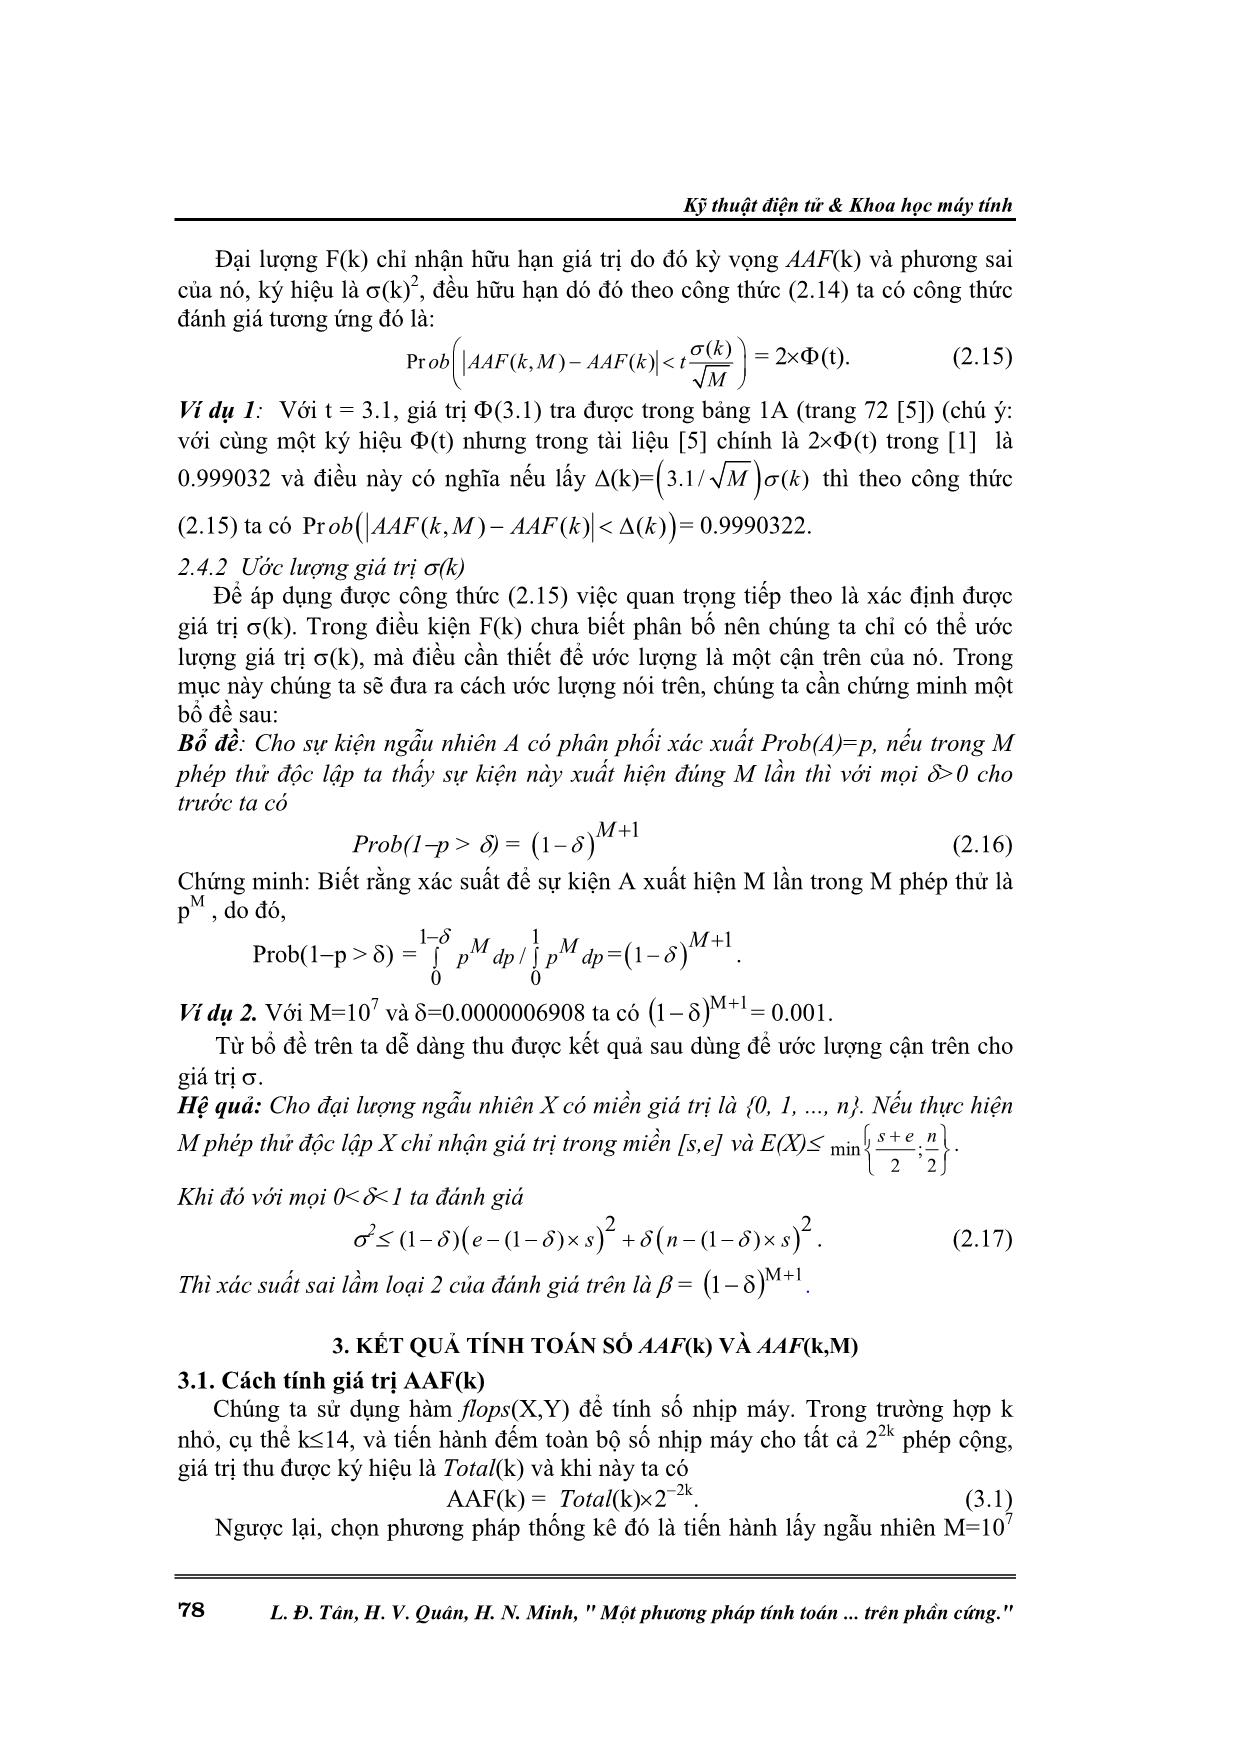 Một phương pháp tính toán tương quan giữa xung nhịp máy và phép cộng hai số nguyên khi thực hiện trên phần cứng trang 4